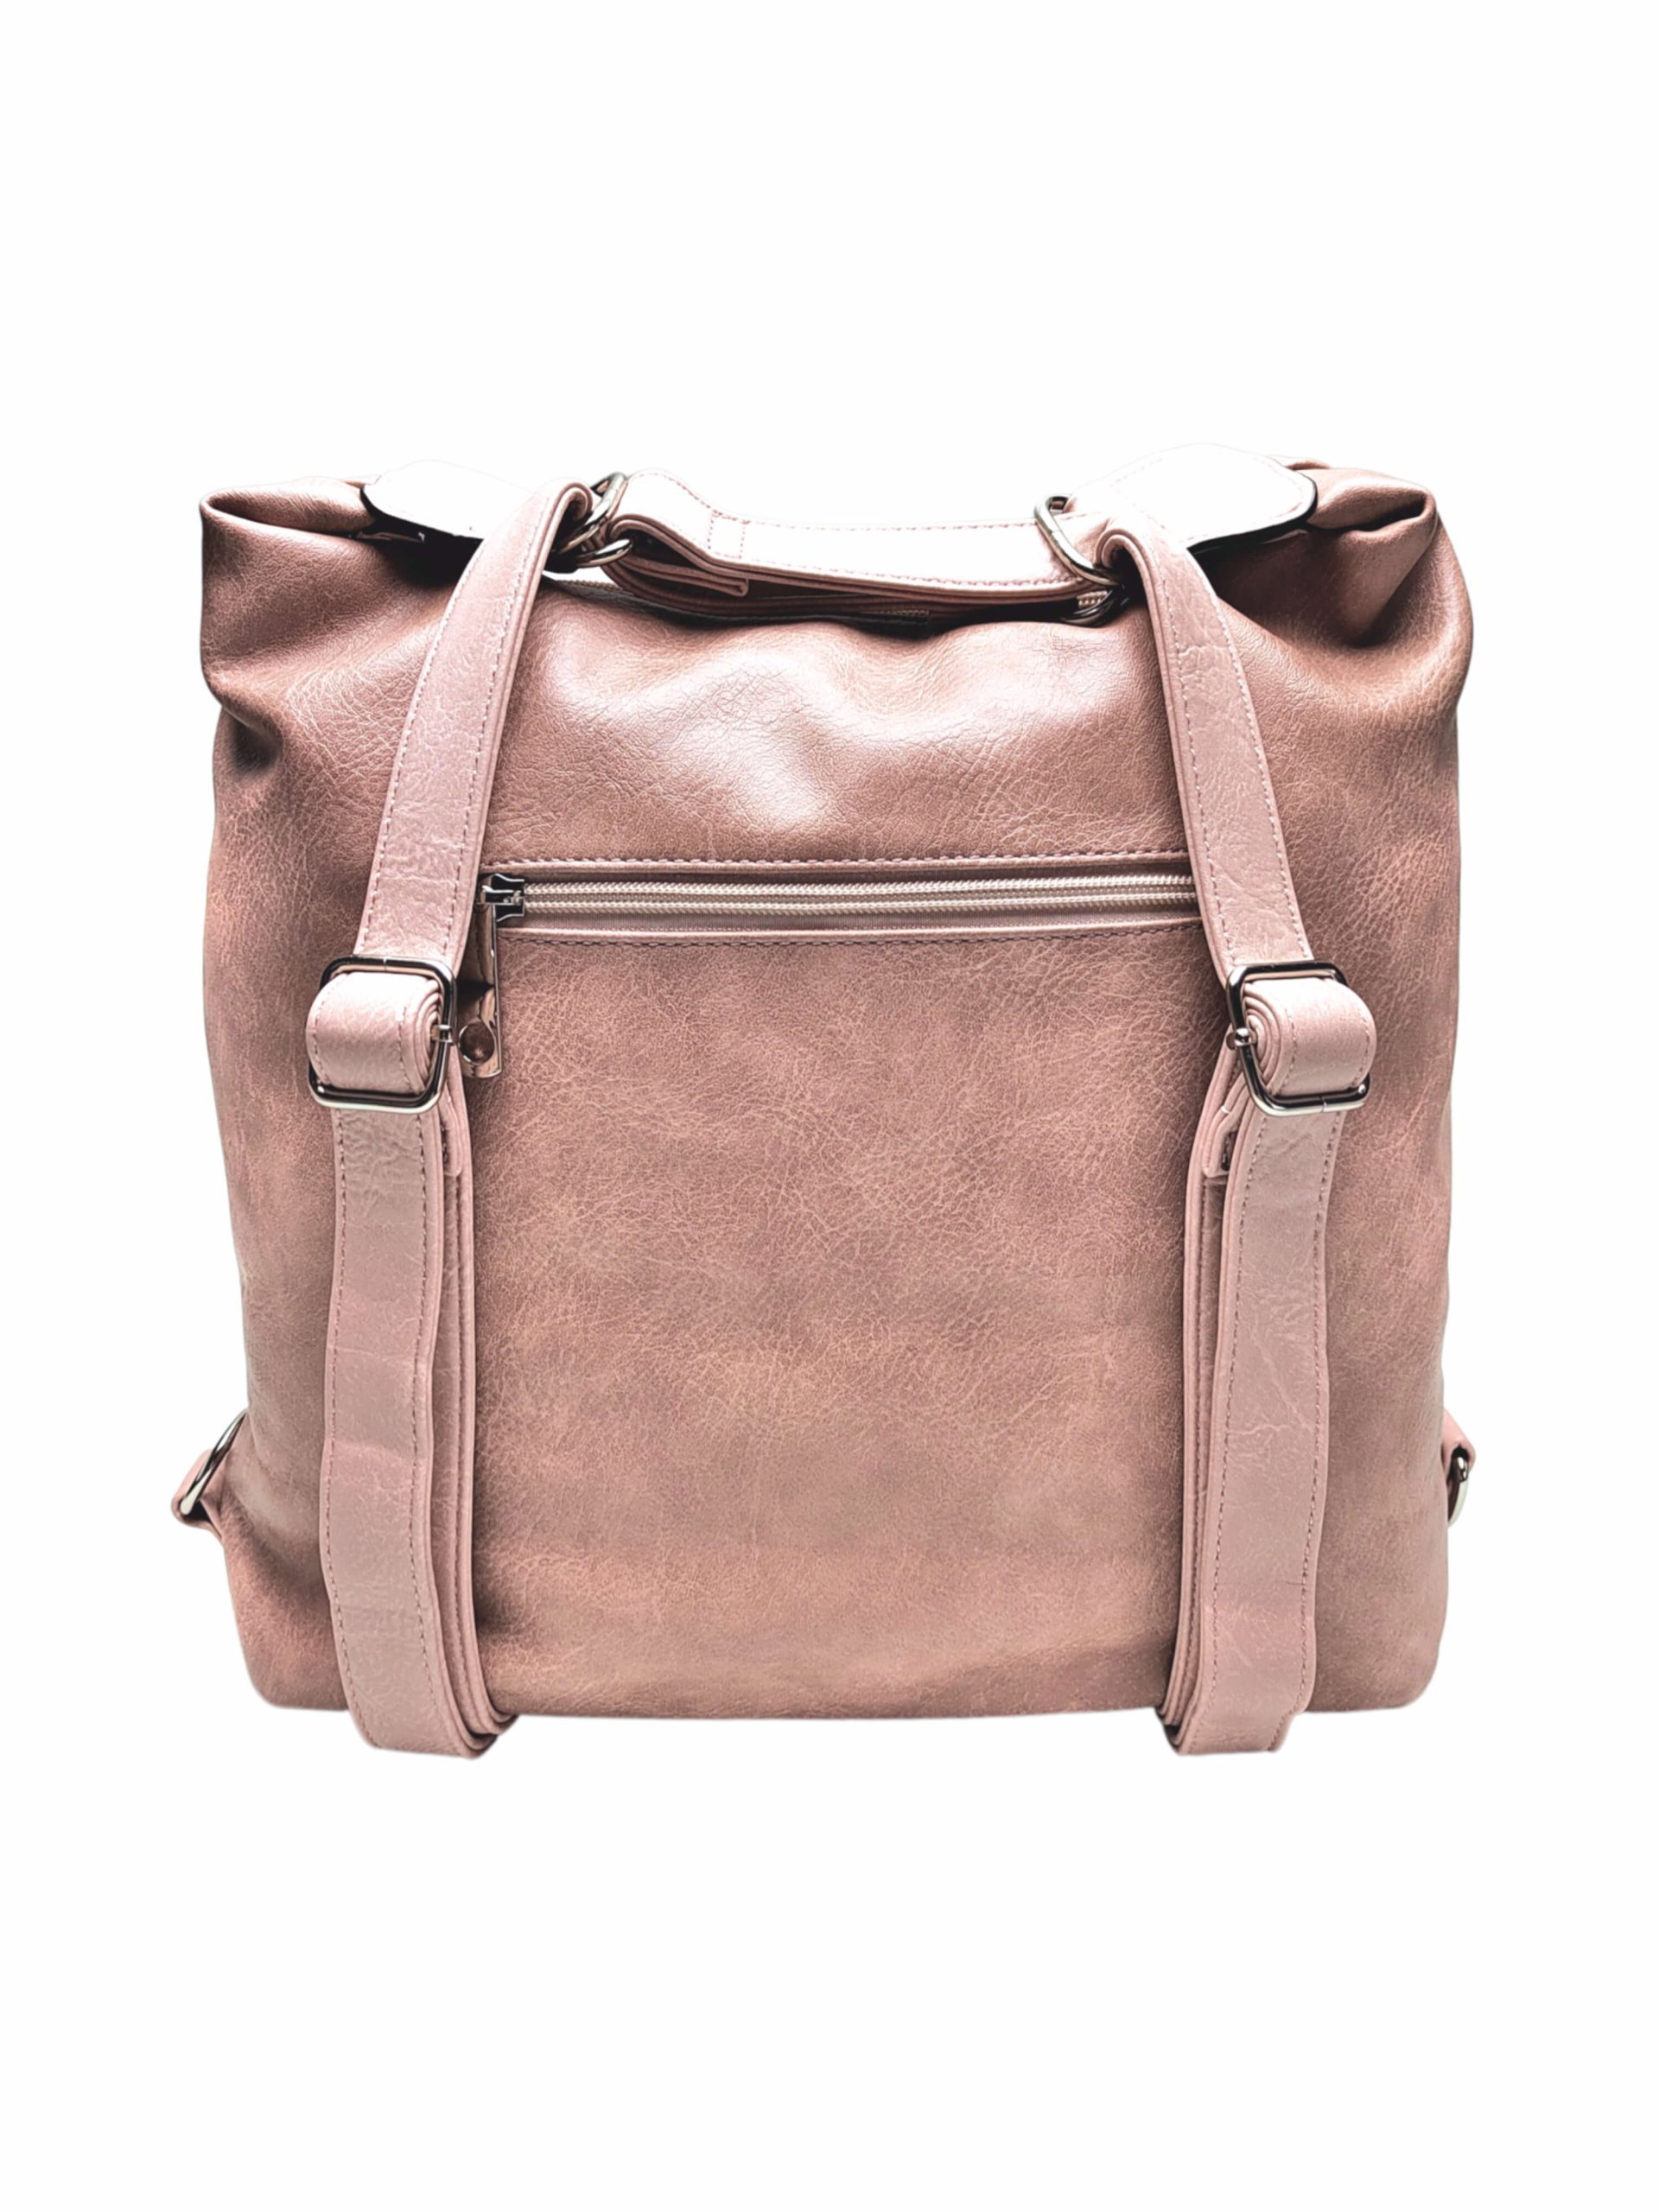 Velký starorůžový kabelko-batoh z eko kůže, Tapple, H18077, zadní strana kabelko-batohu 2v1 s popruhy